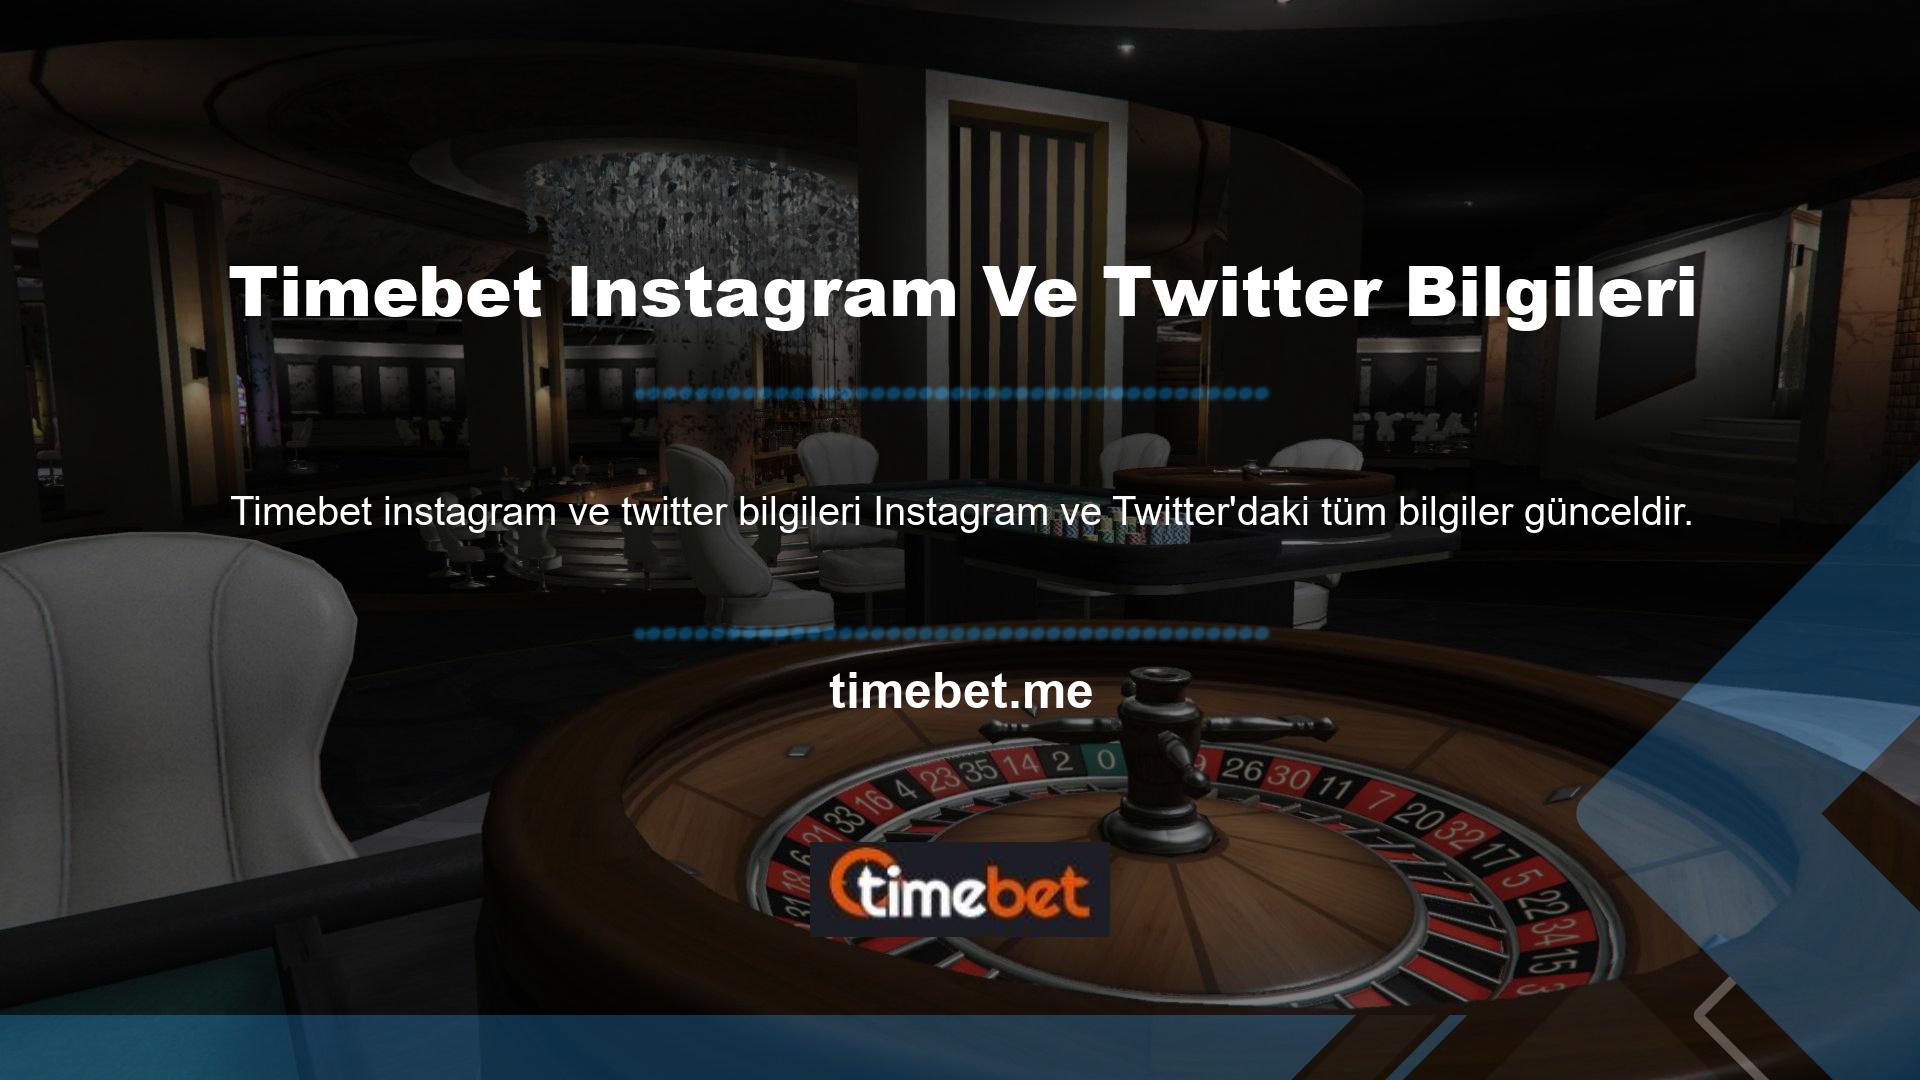 Timebet Instagram Twitter hakkında bilgiler Oyunlar, oranlar, bonuslar ve daha fazlasını içerir